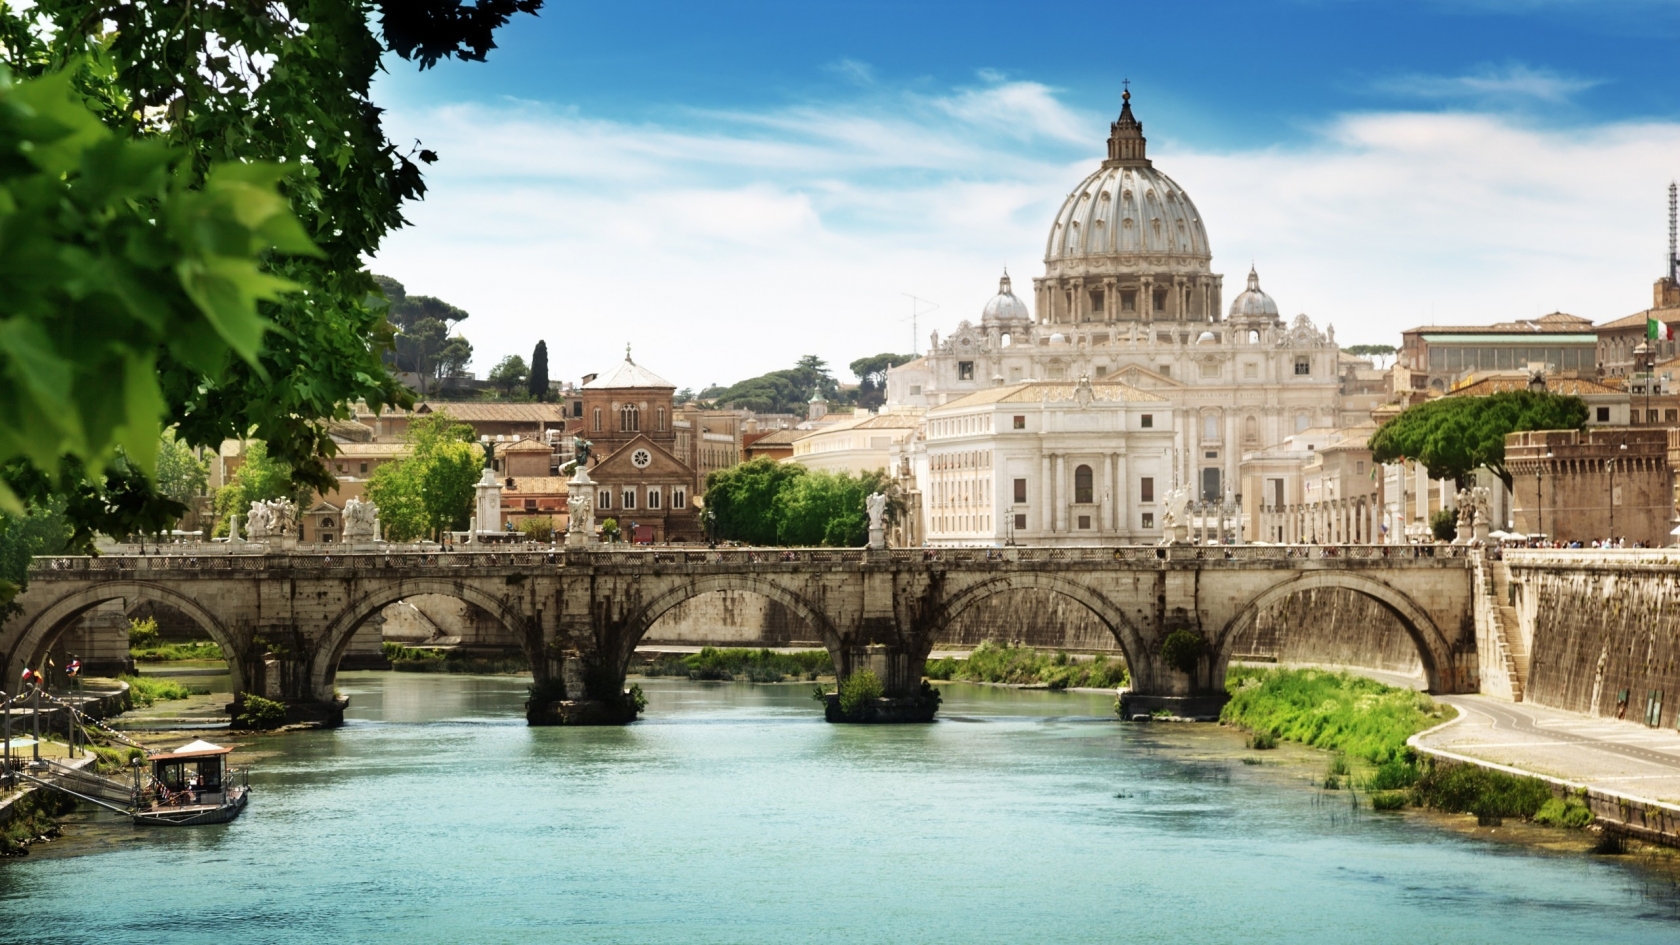 St Angelo Bridge Rome for 1680 x 945 HDTV resolution